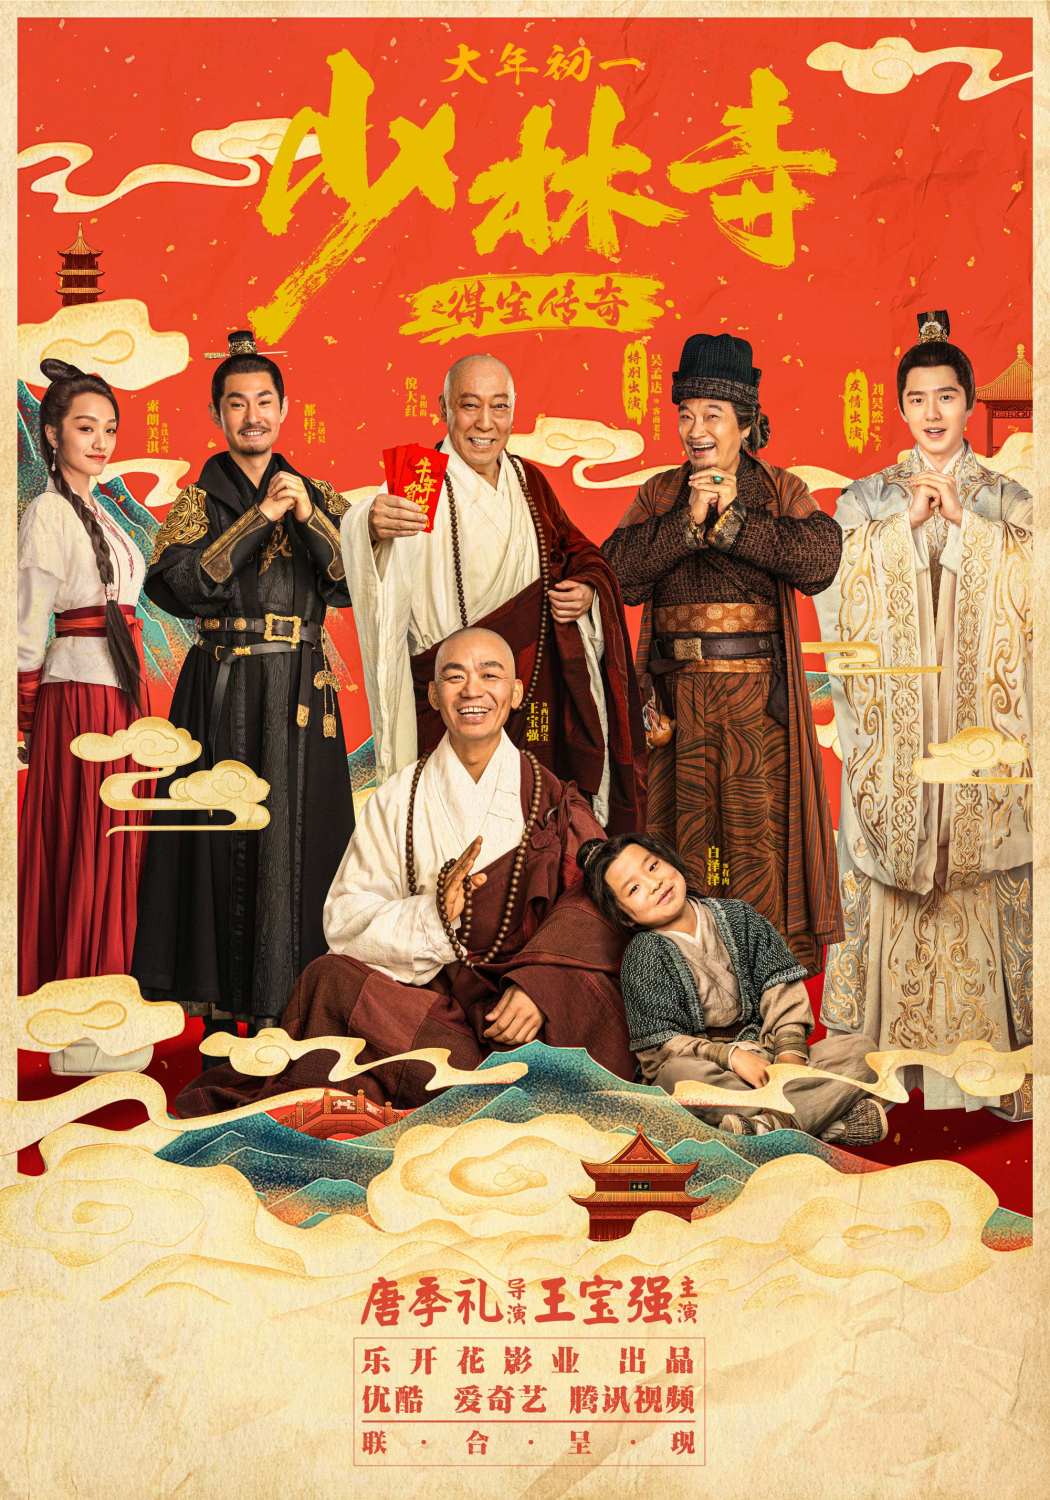 Xem Phim Truyền Kỳ Đắc Bảo Ở Thiếu Lâm Tự (Shao Lin Shi Zhi De Bao Chuan Qi)